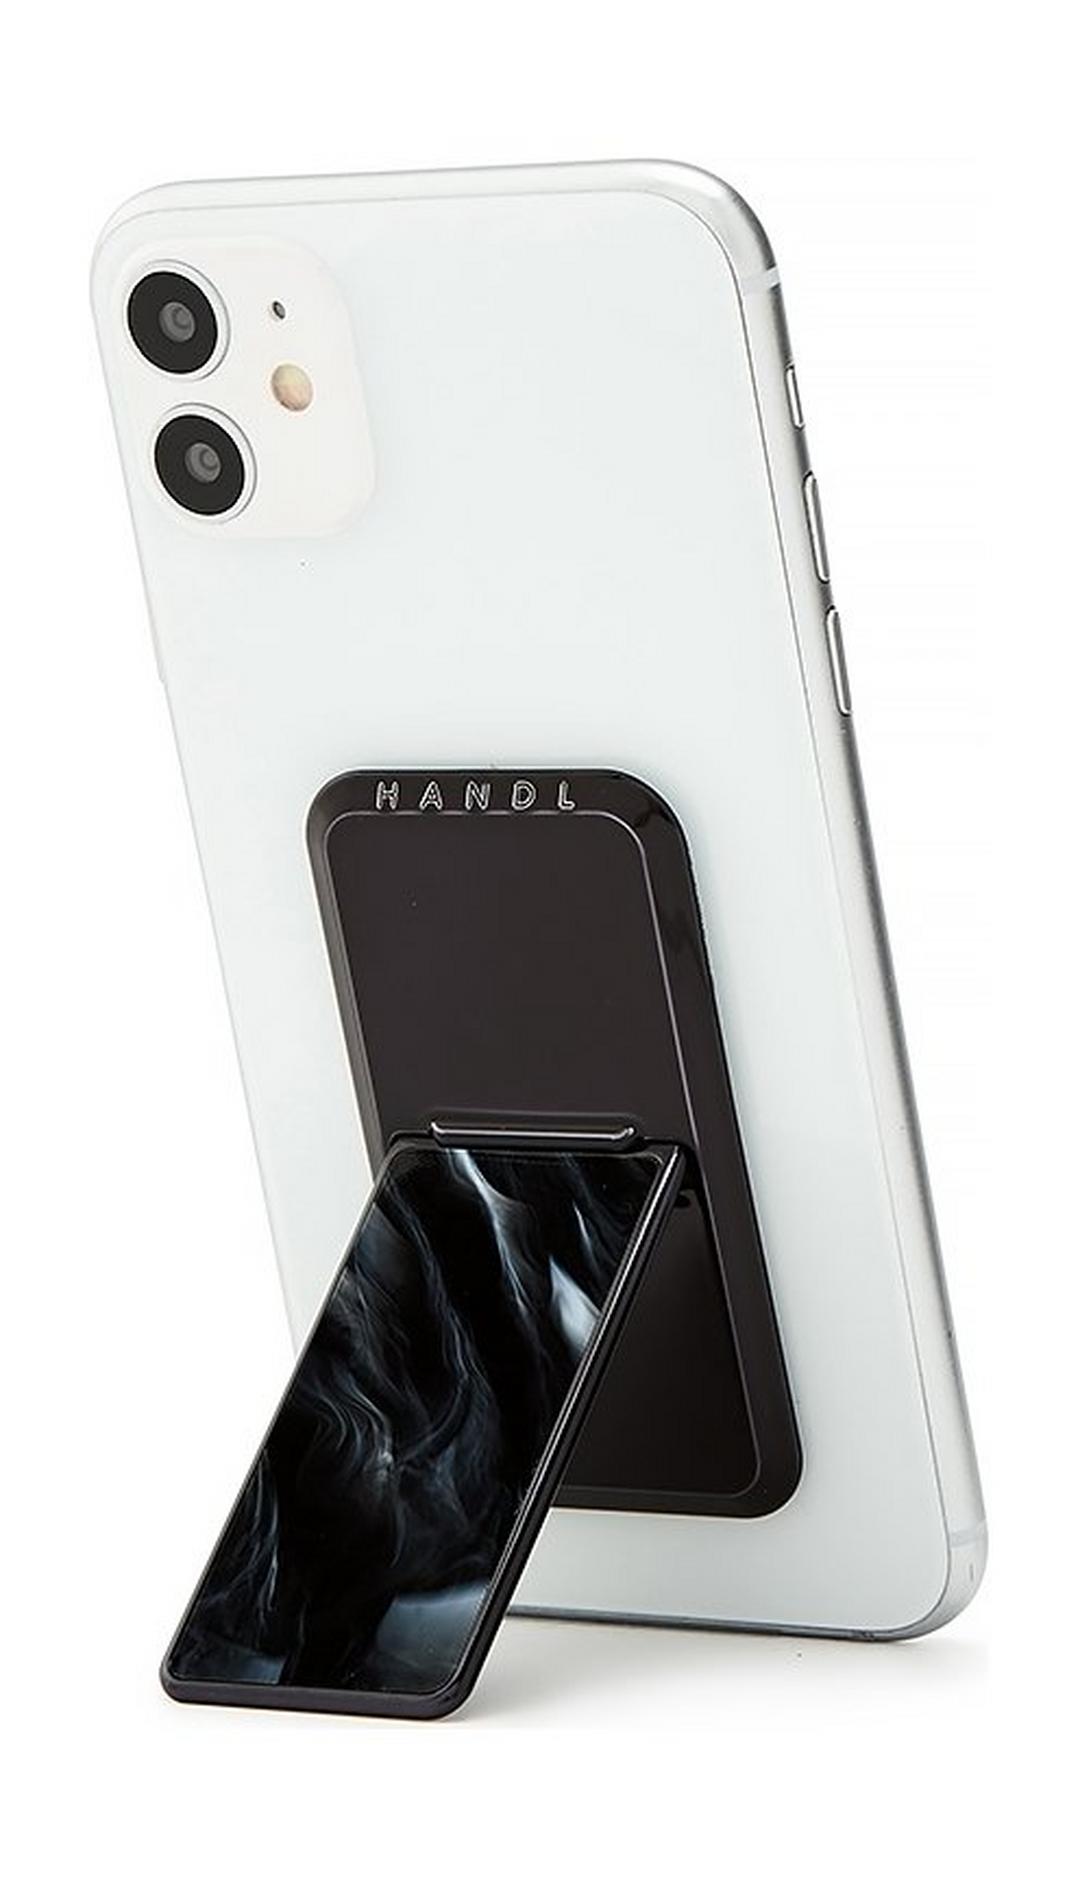 HANDLstick Marble Smartphone Holder - Black